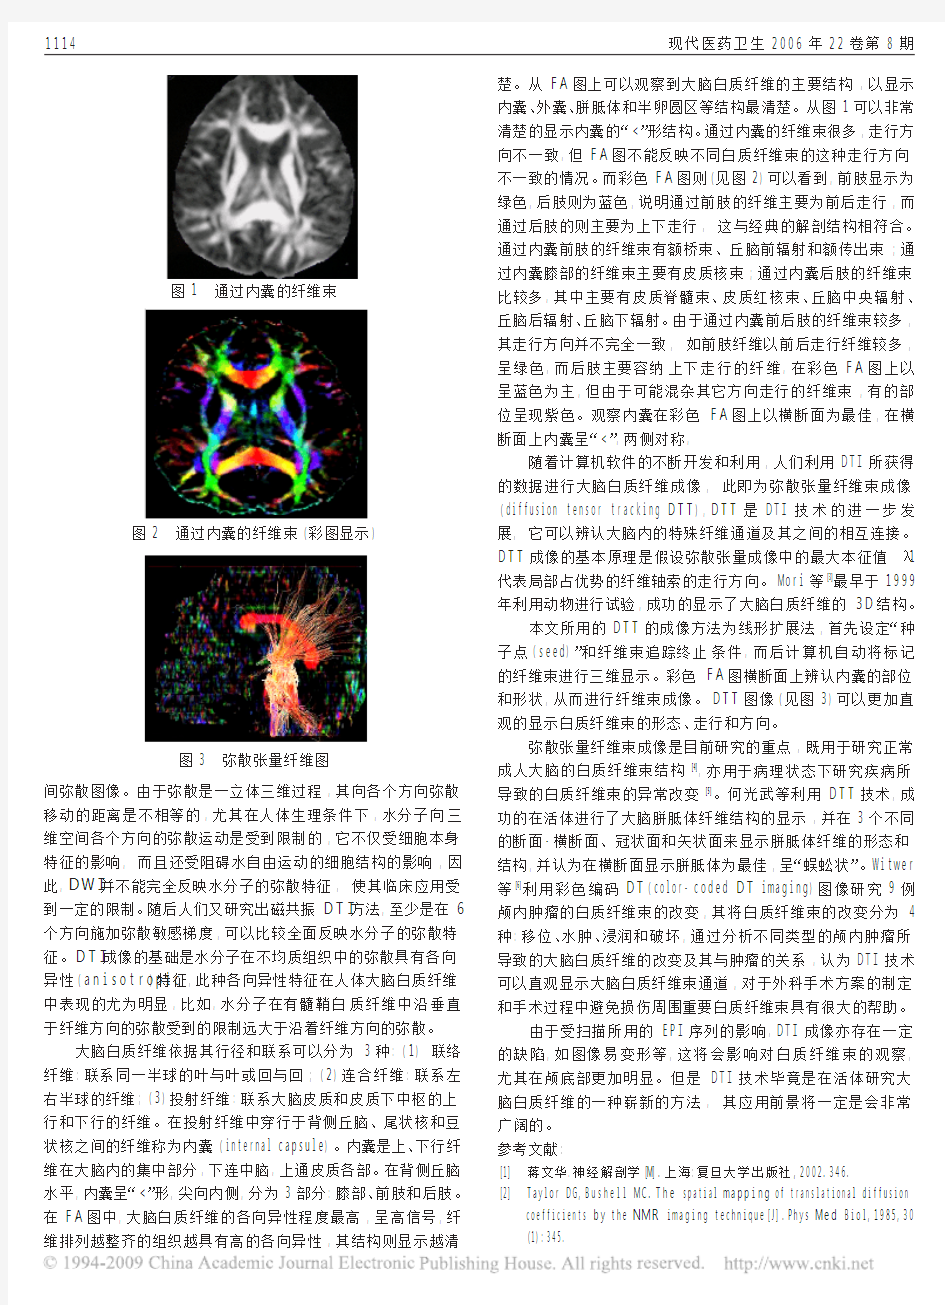 正常成人大脑内囊磁共振弥散张量成像研究